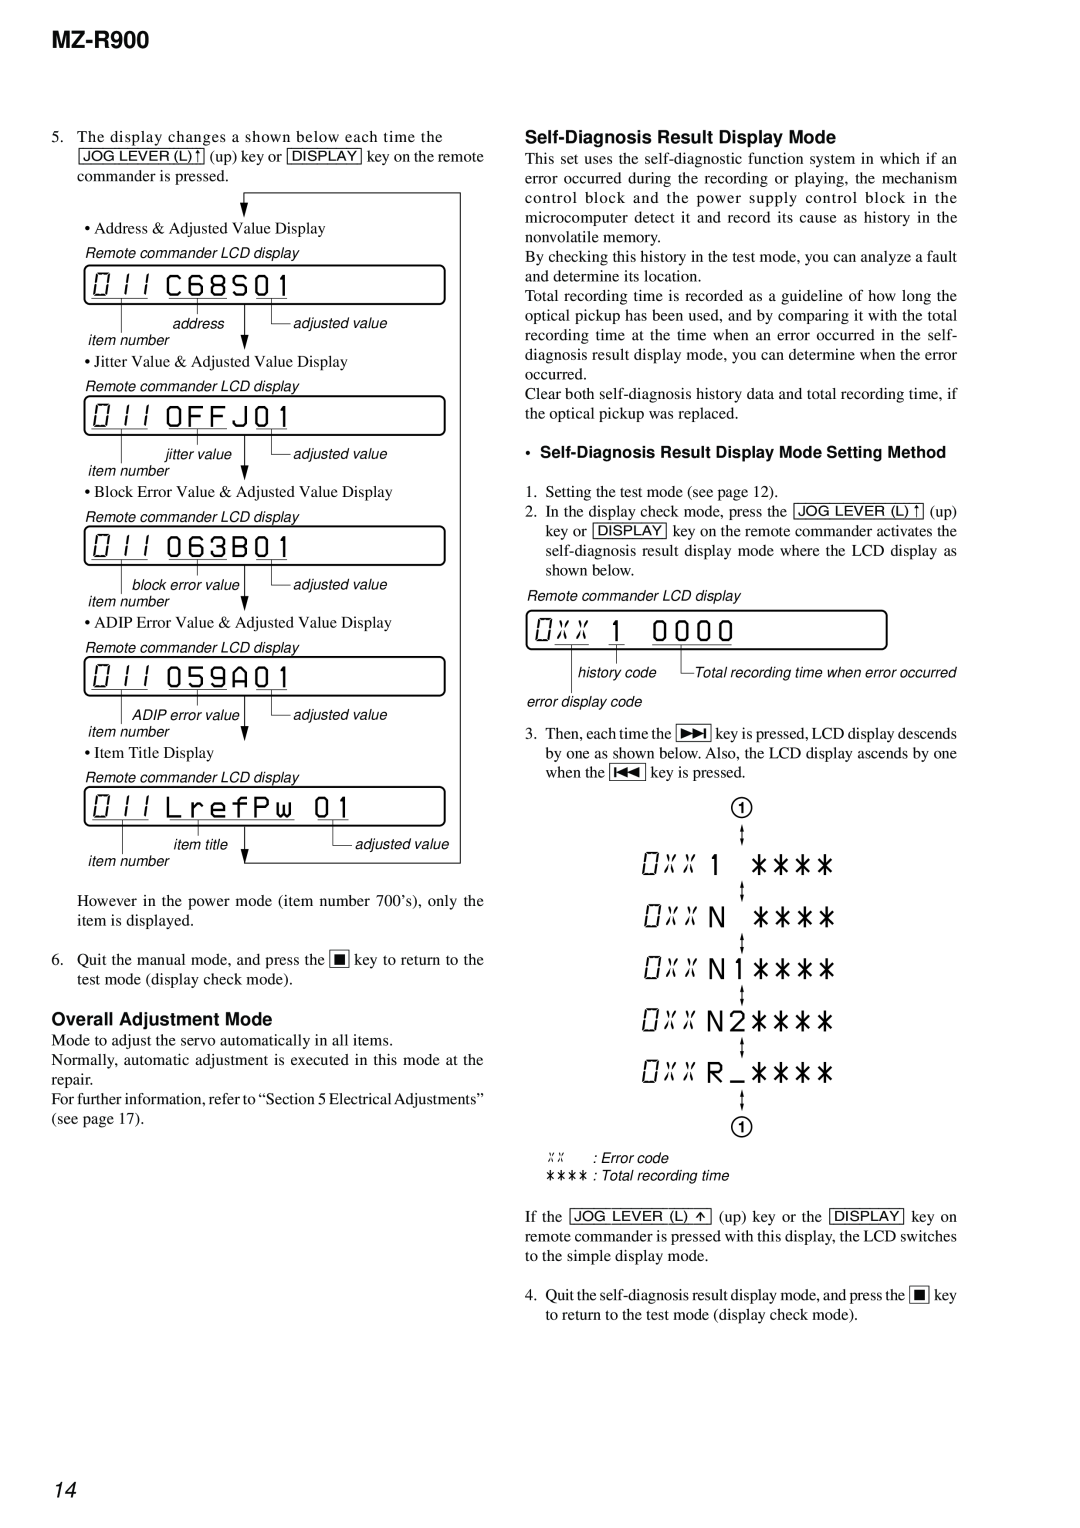 Sony MZ-R900 service manual 011 0 5 9 A, L r e f P w, 011C 6 8 S, 011O F F J, 0110 6 3 B, 0XX 1, 0XX N 0XX N 0XX R 